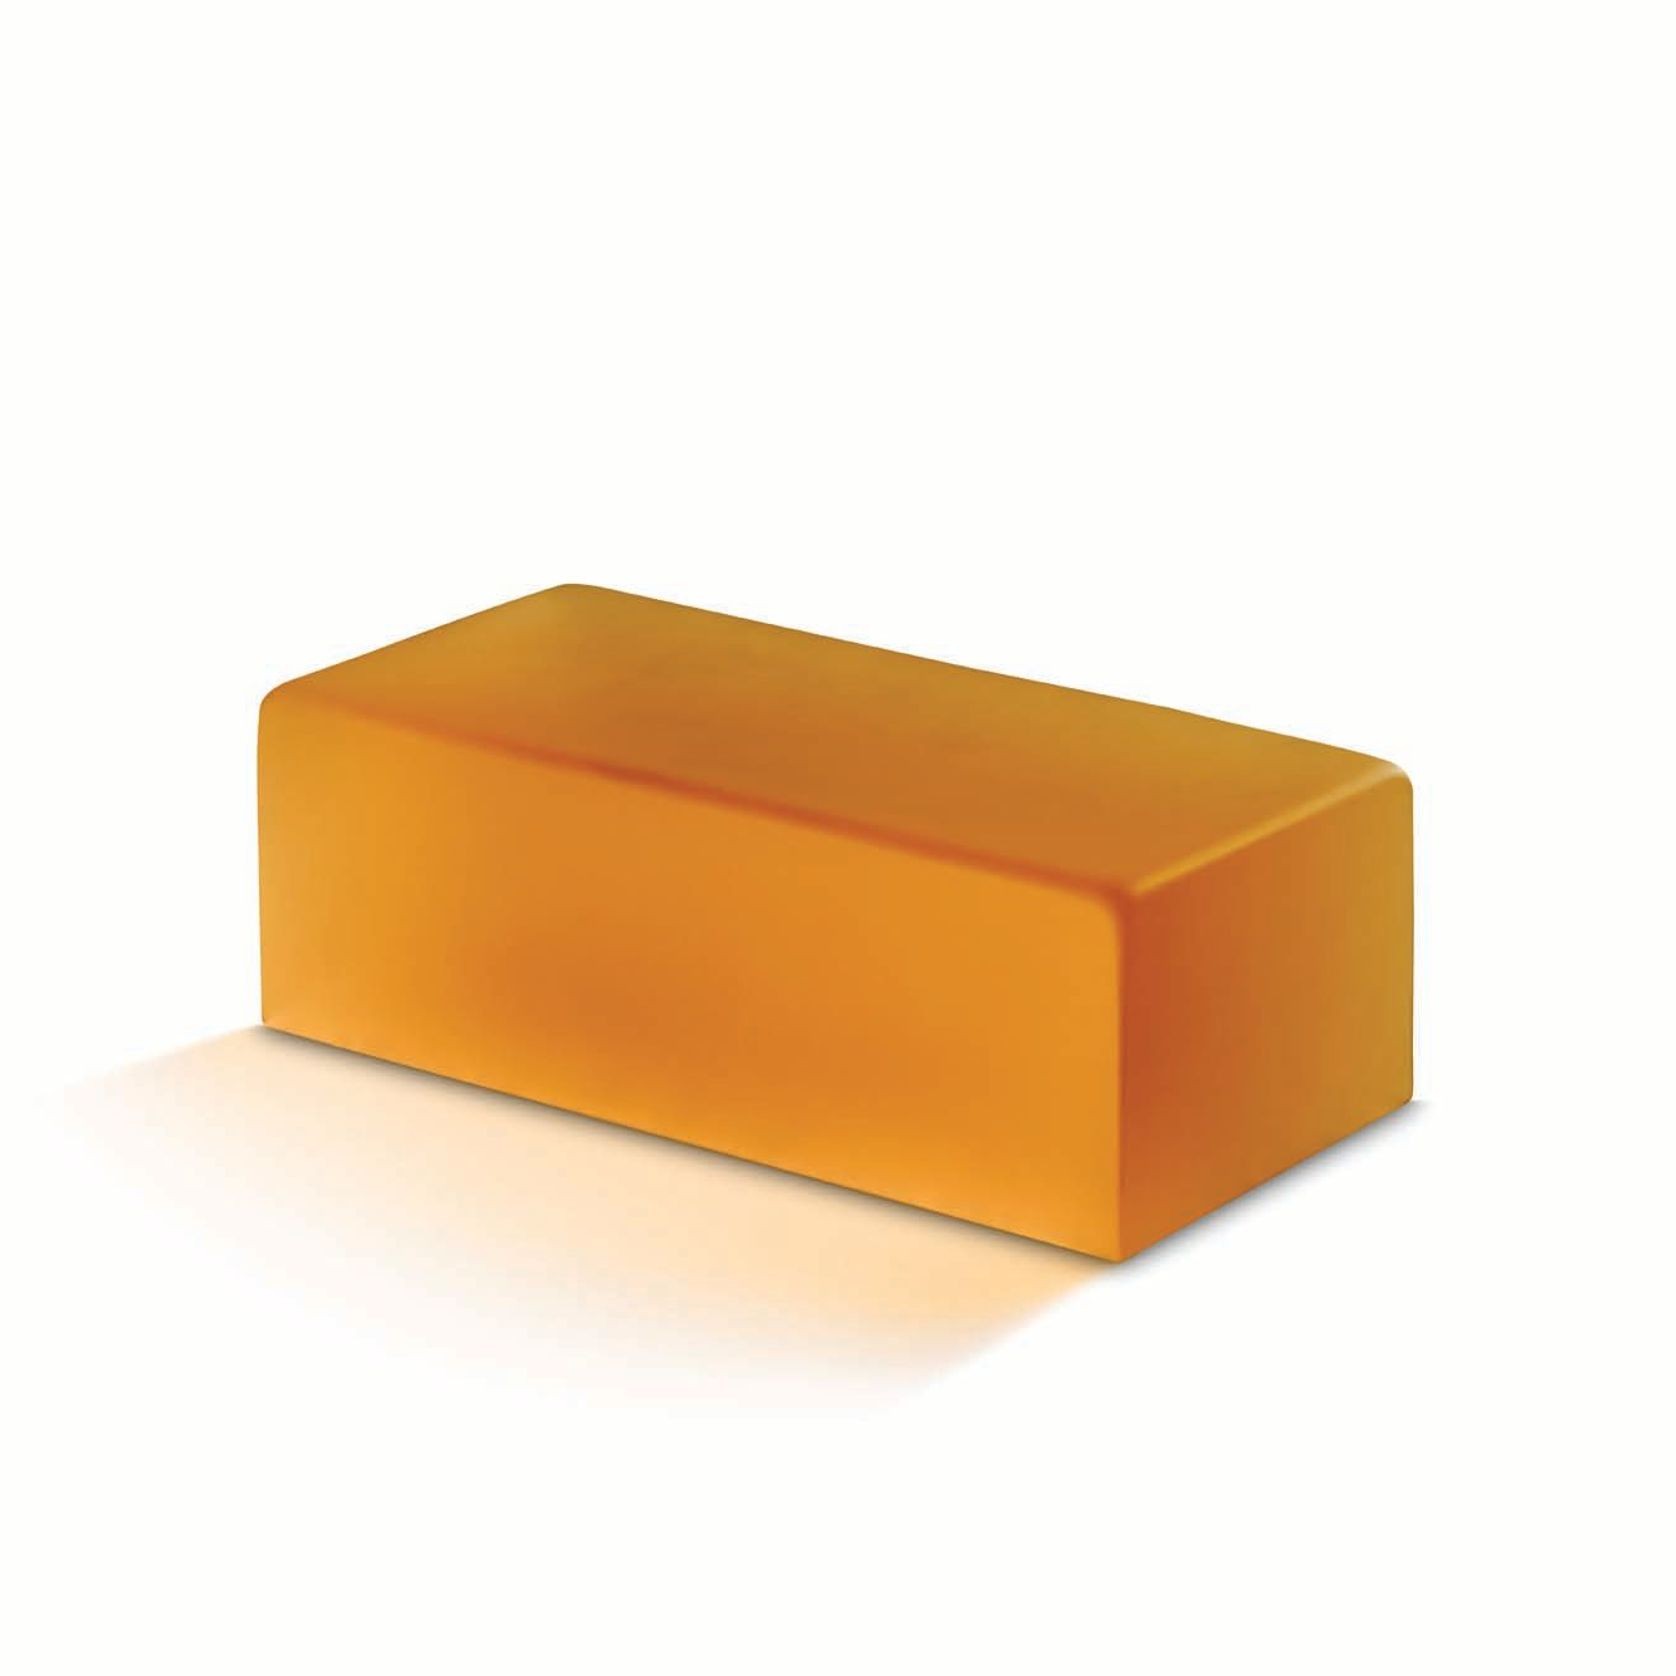 Golden Amber - Venetian Glass | Austral Bricks gallery detail image